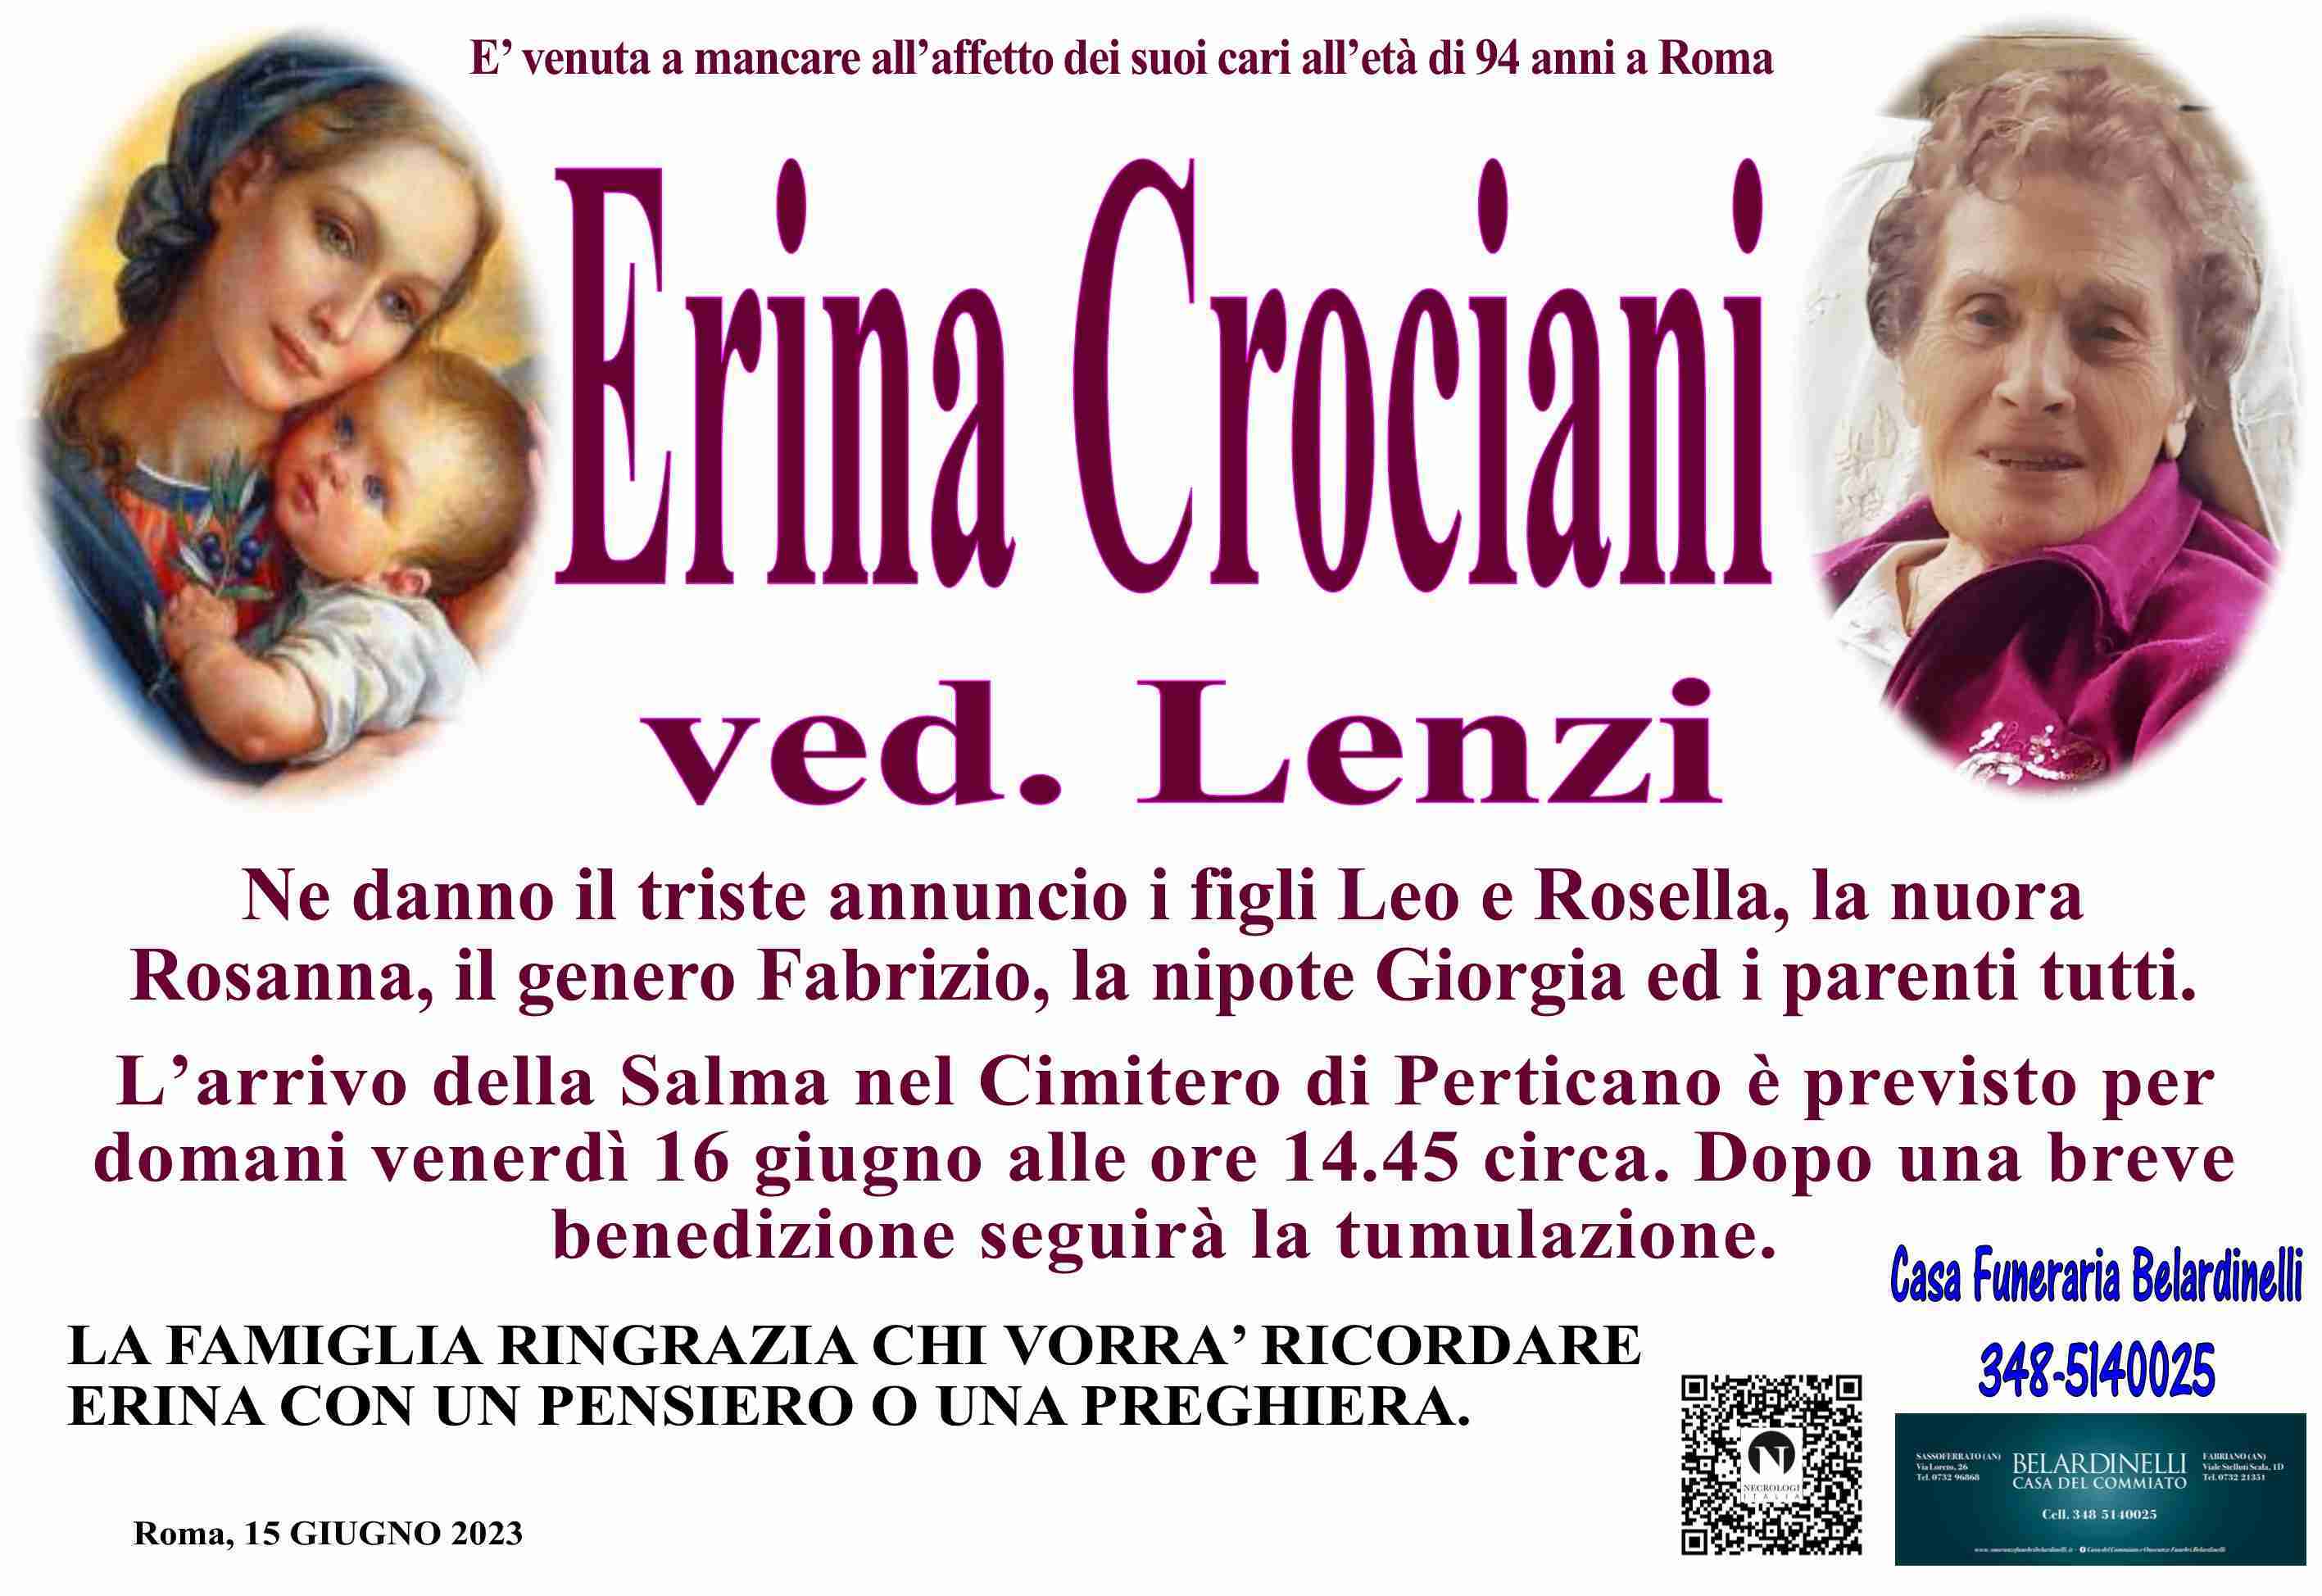 Erina Crociani